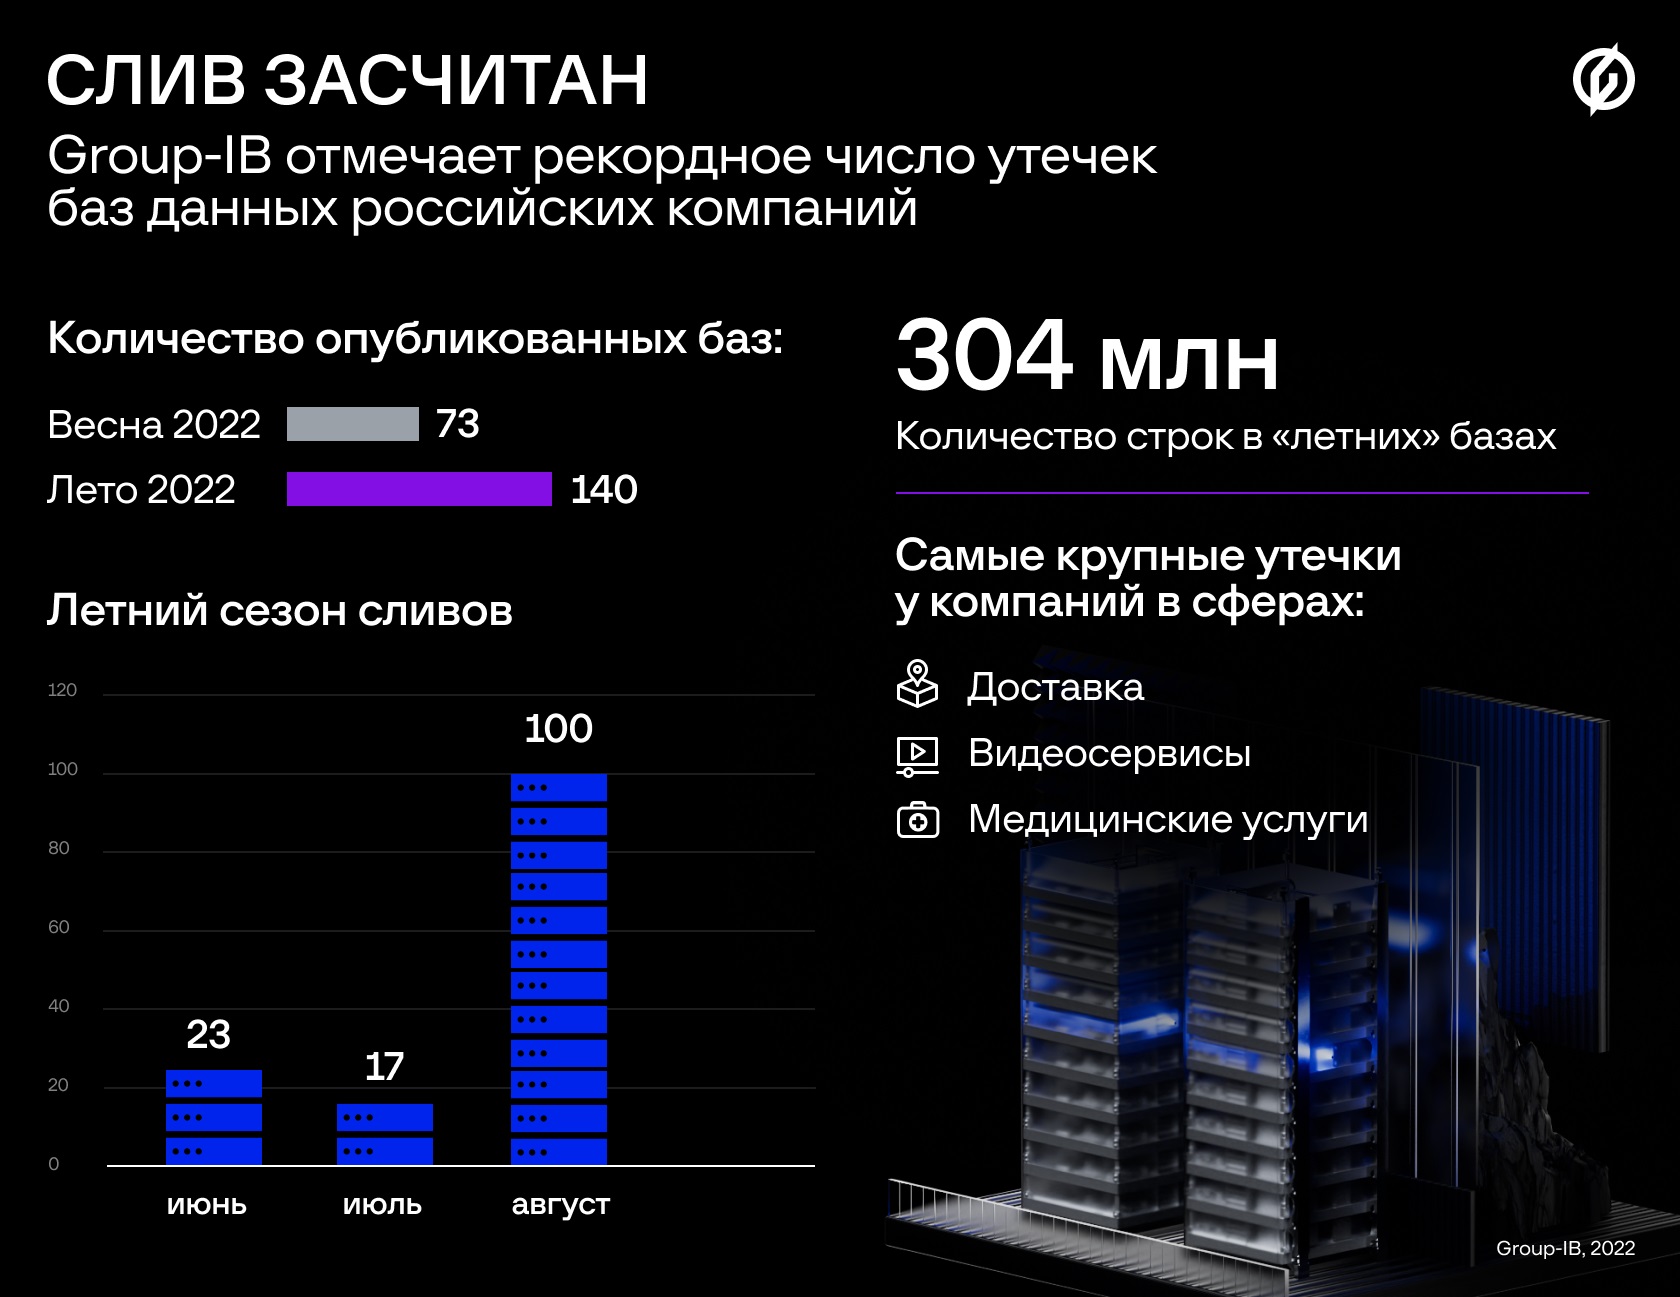 Group-IB отмечает рекордное число утечек баз данных российских компаний